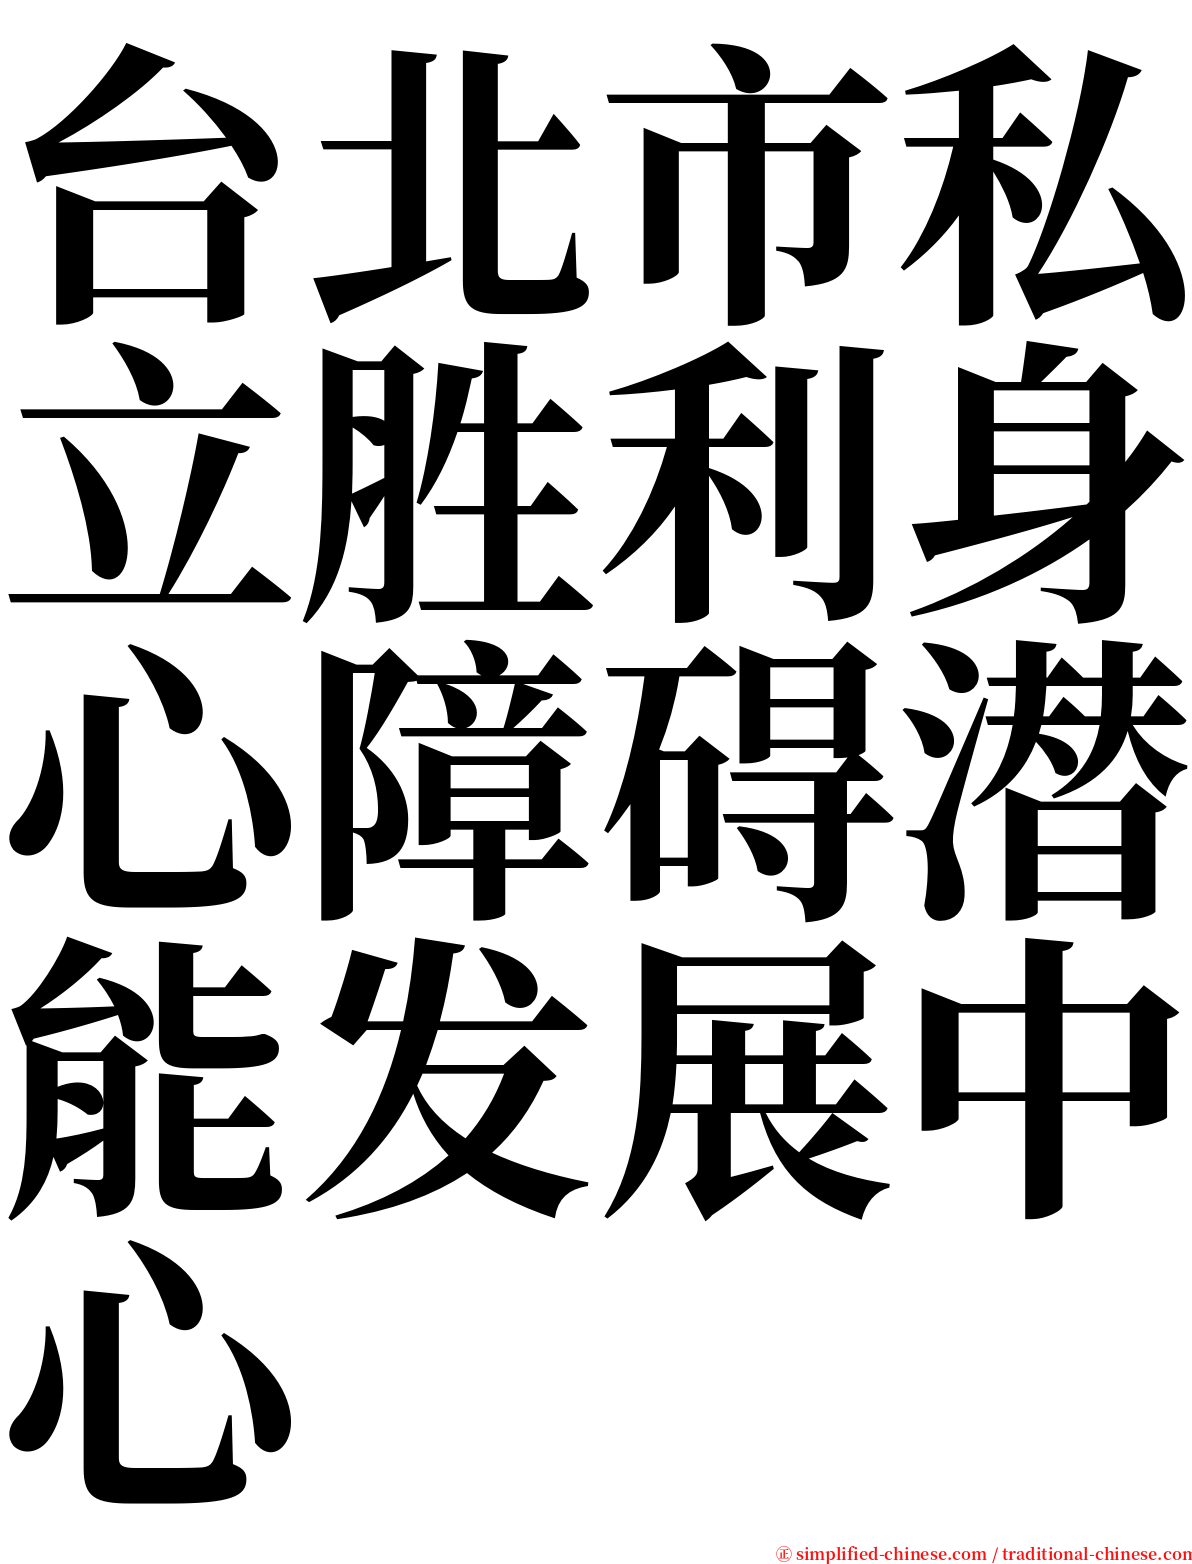 台北市私立胜利身心障碍潜能发展中心 serif font